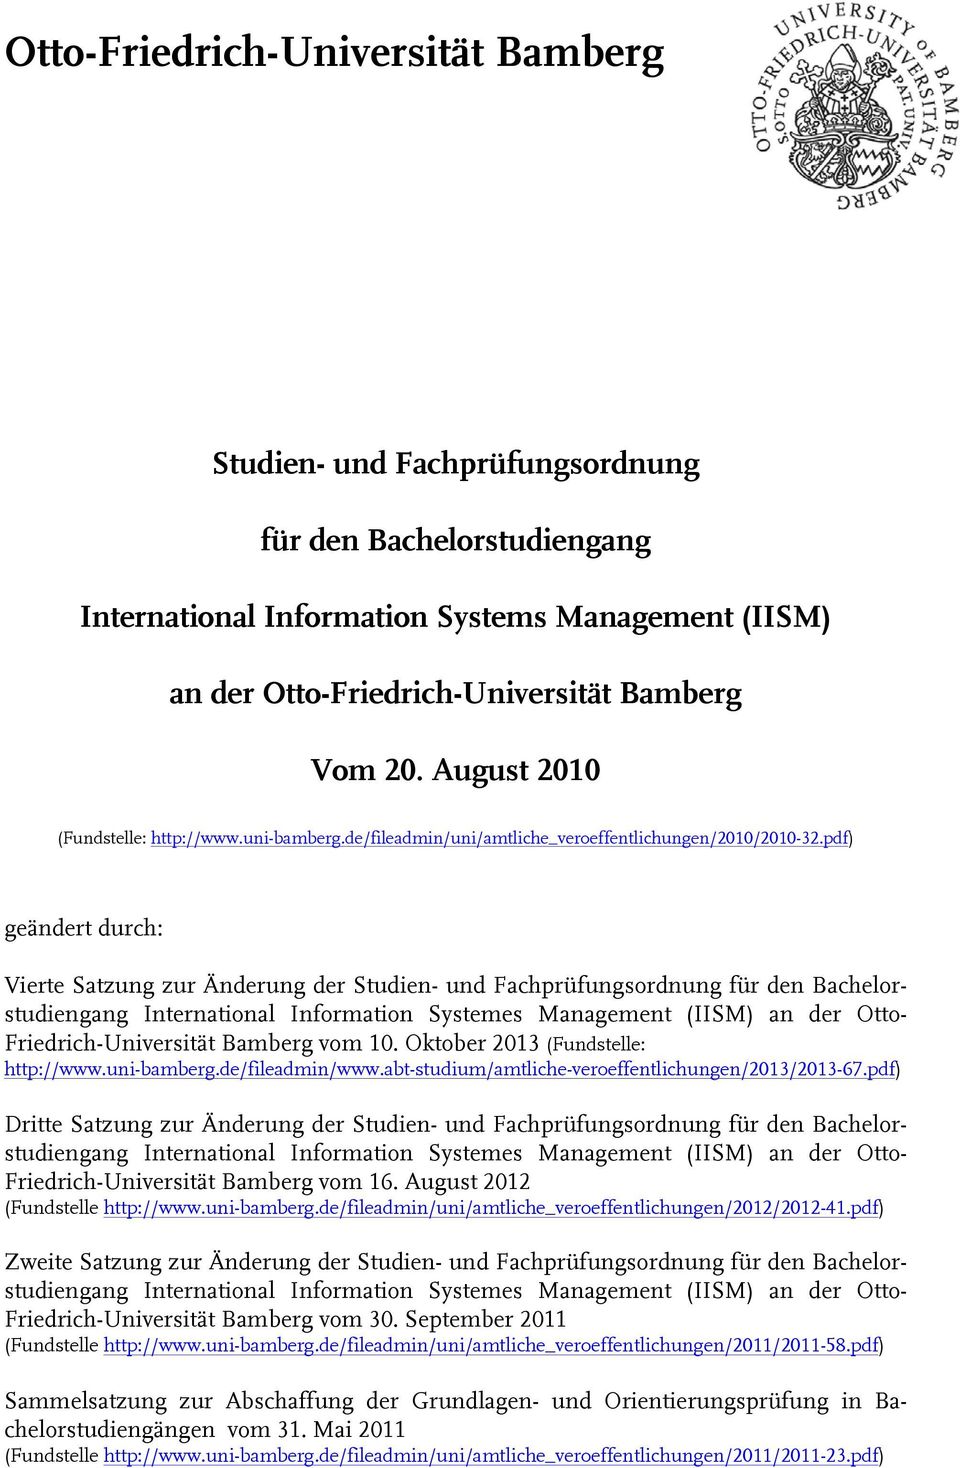 pdf) geändert durch: Vierte Satzung zur Änderung der Studien- und Fachprüfungsordnung für den Bachelorstudiengang International Information Systemes Management (IISM) an der Otto-